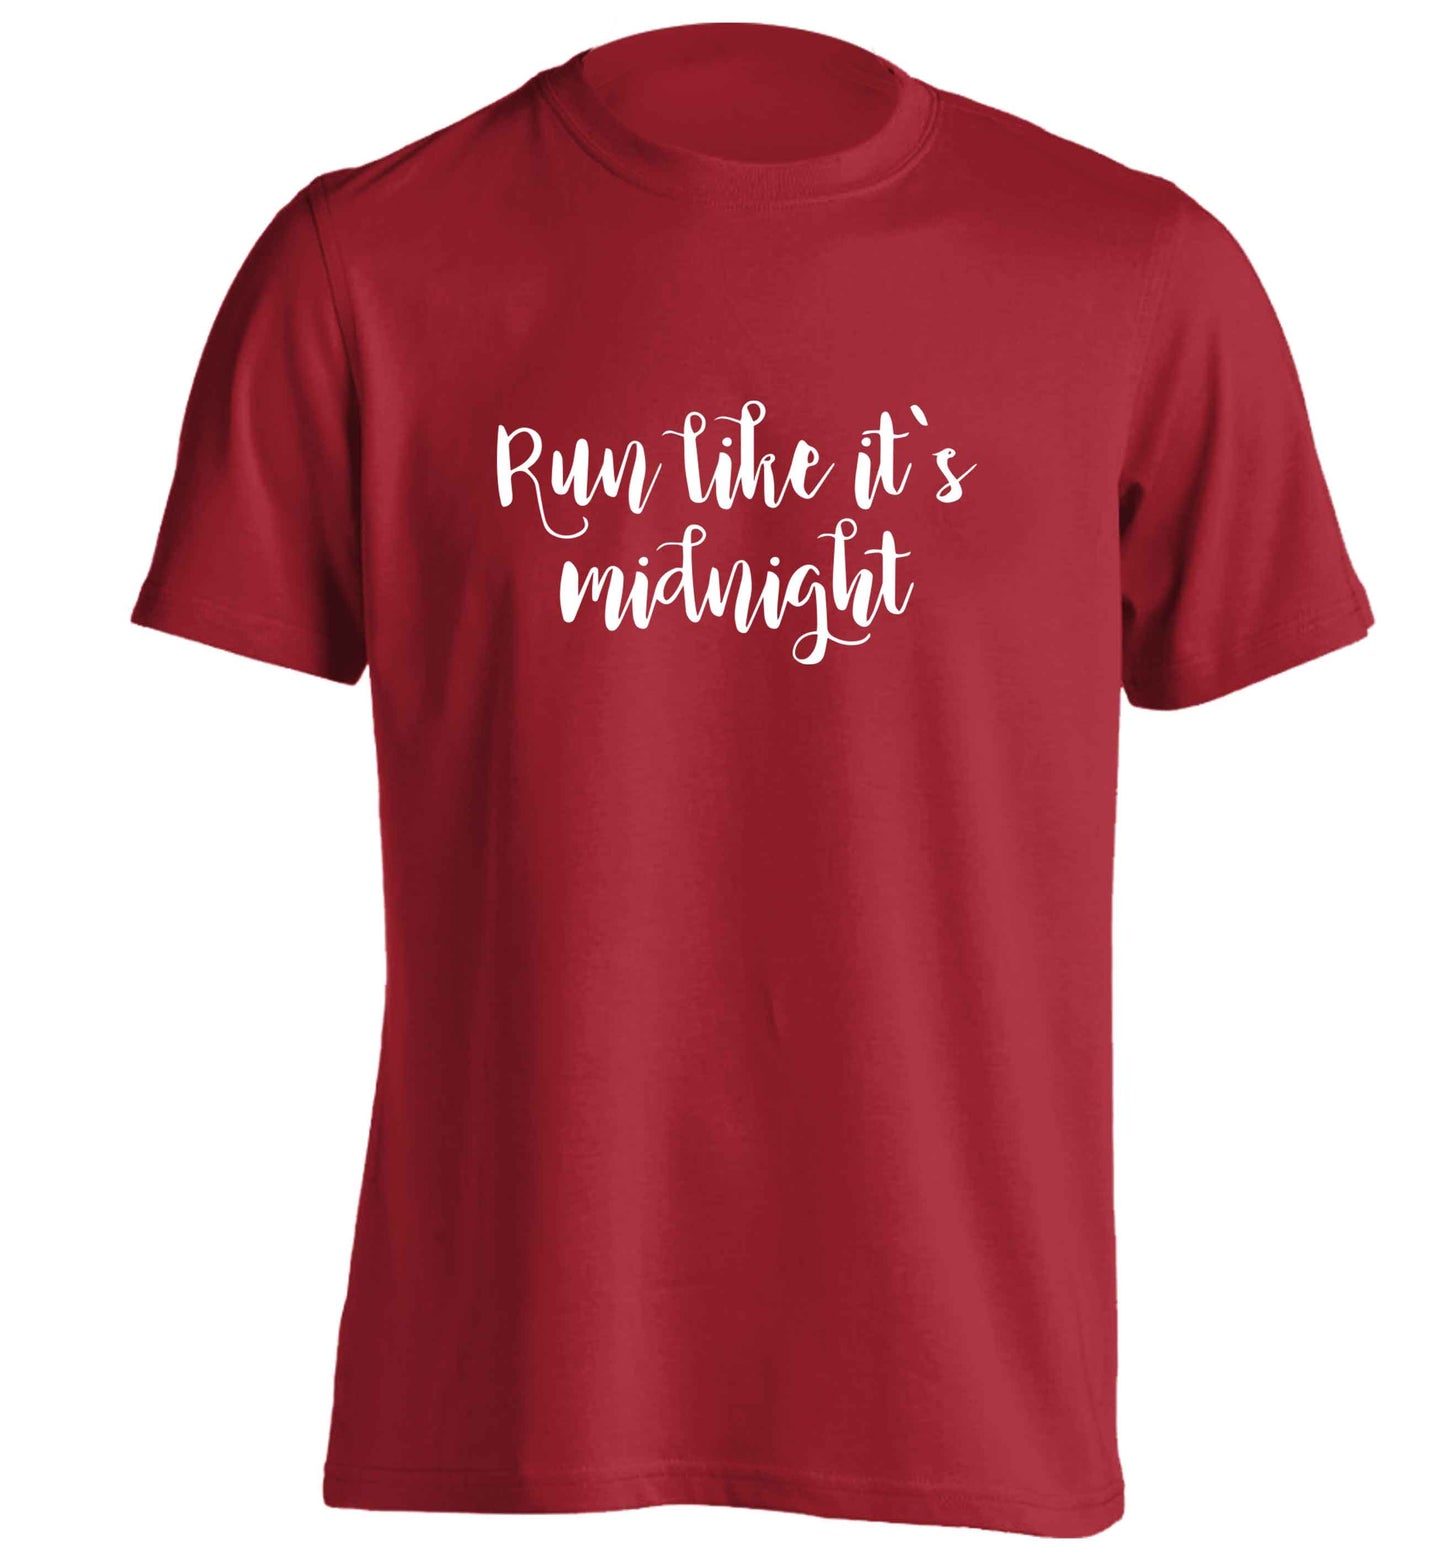 Run like it's midnight adults unisex red Tshirt 2XL